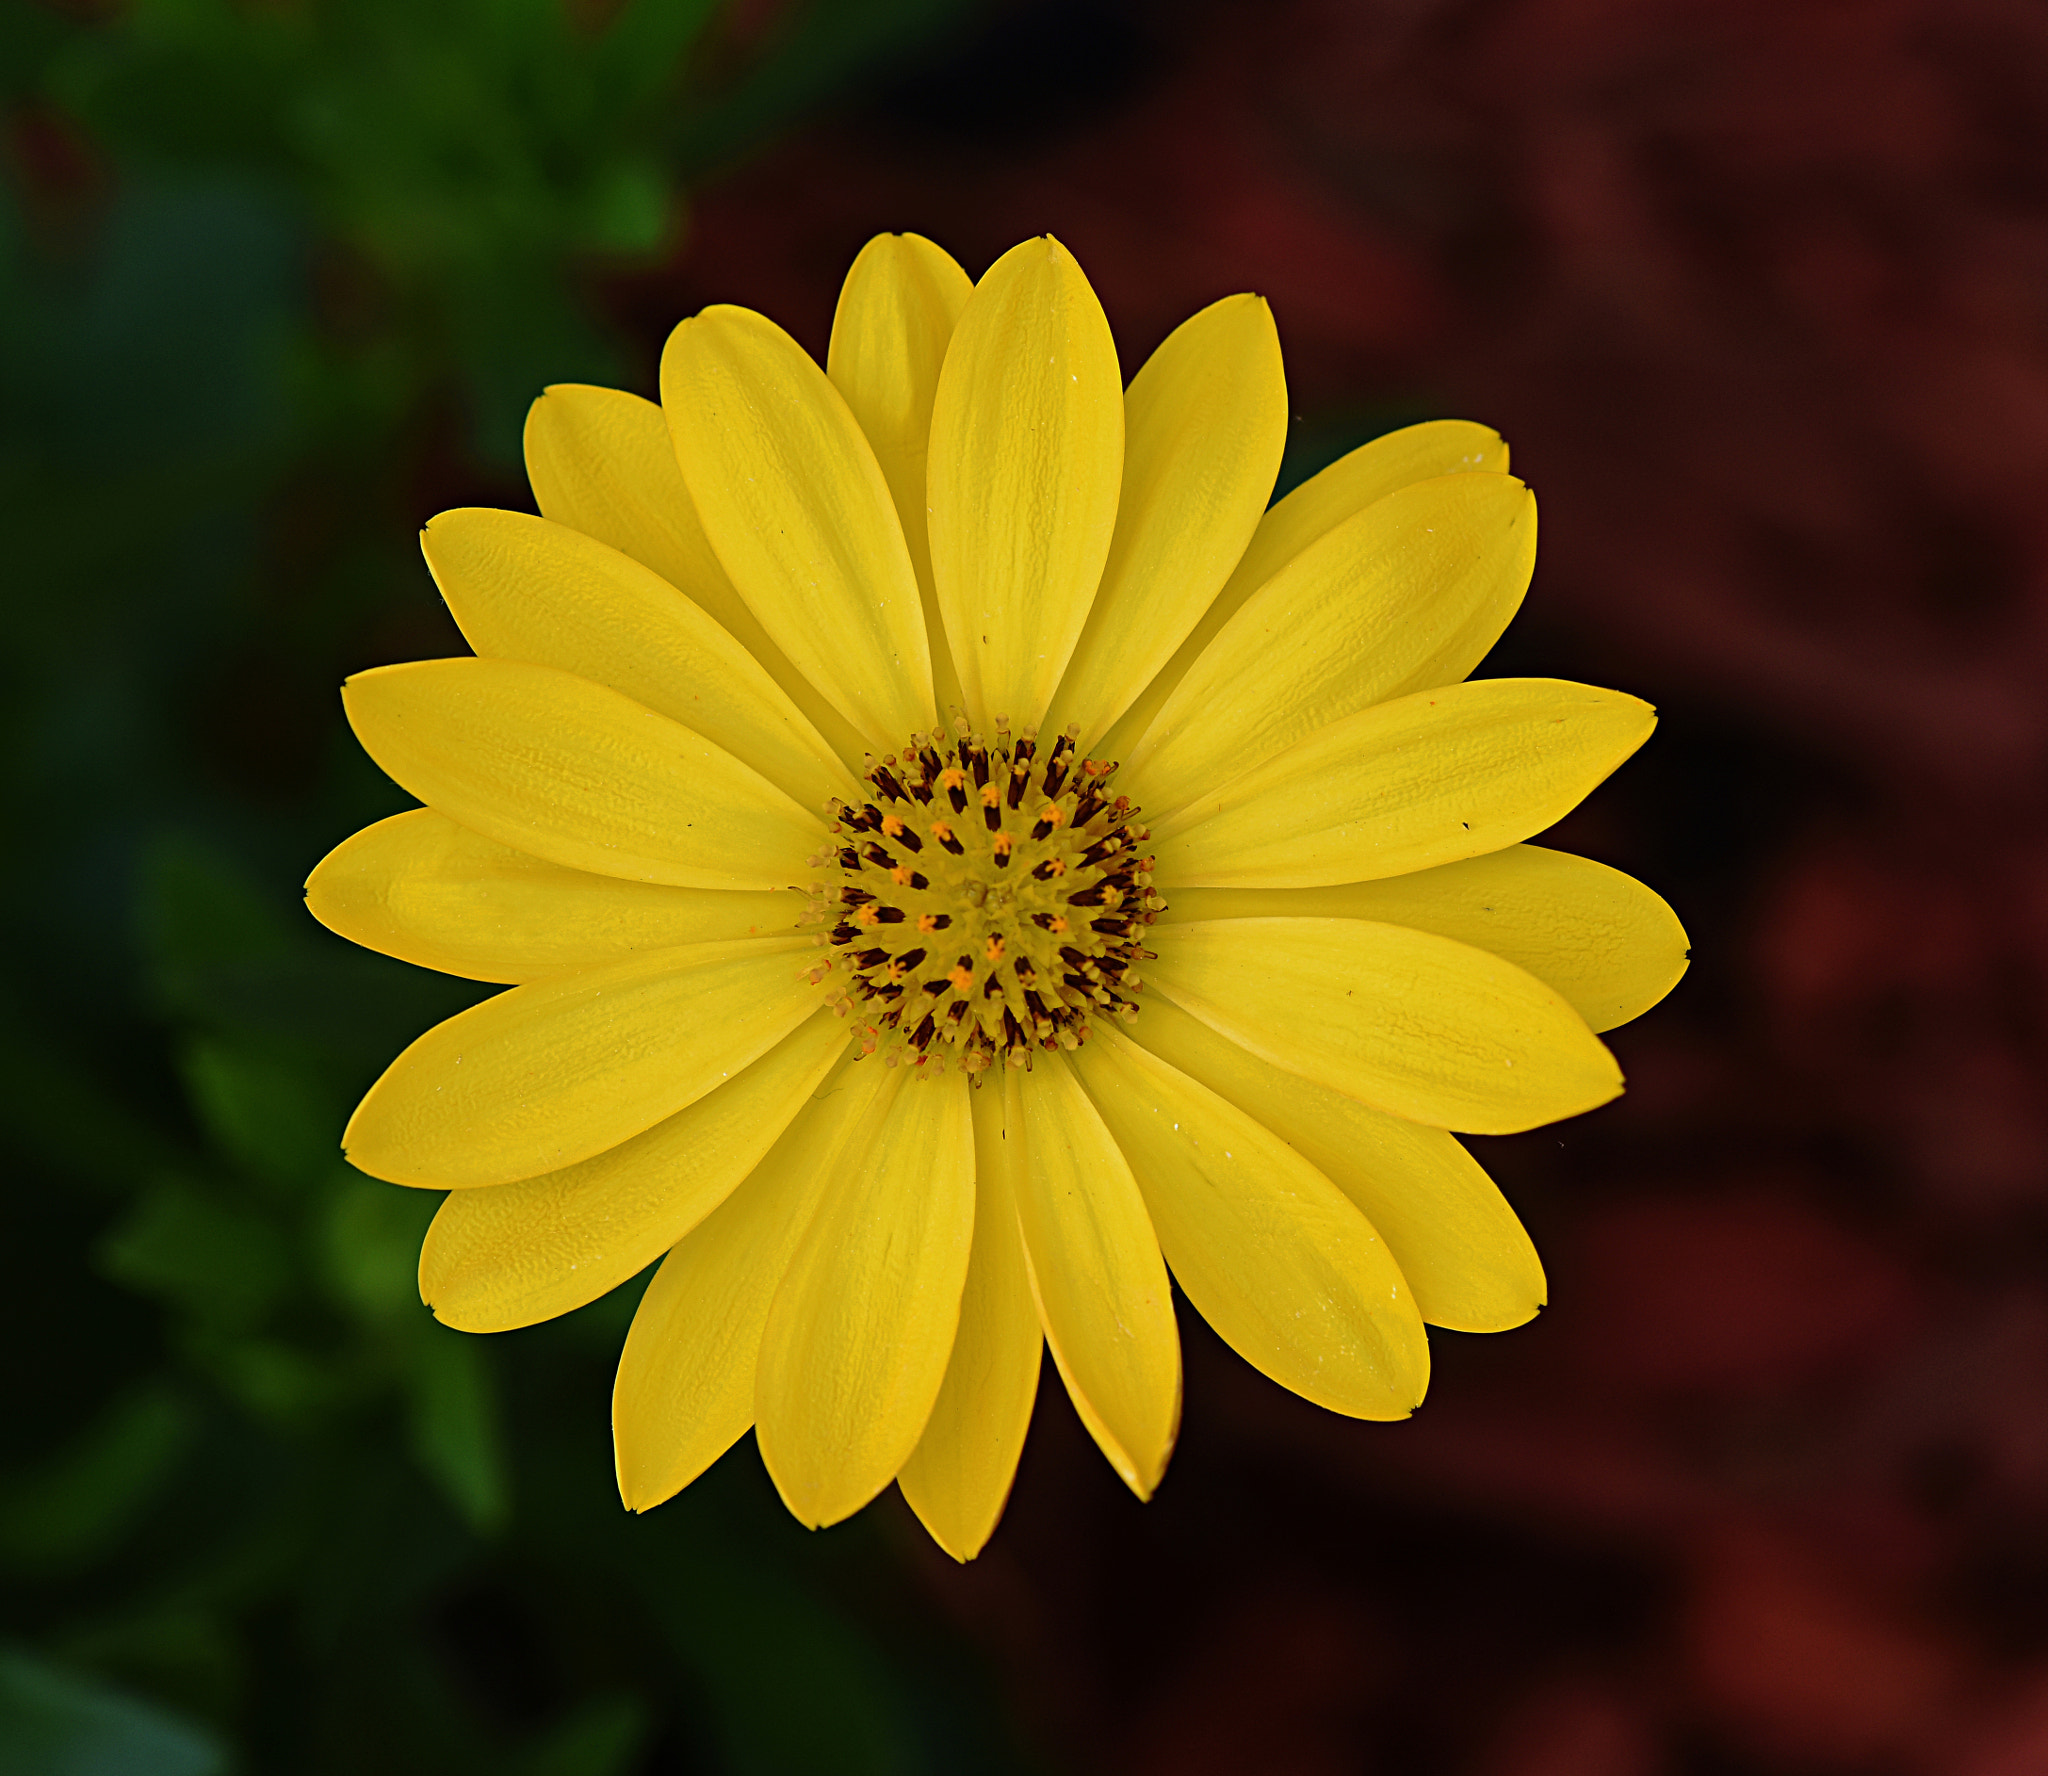 Nikon D810 sample photo. Yellow daisy photography